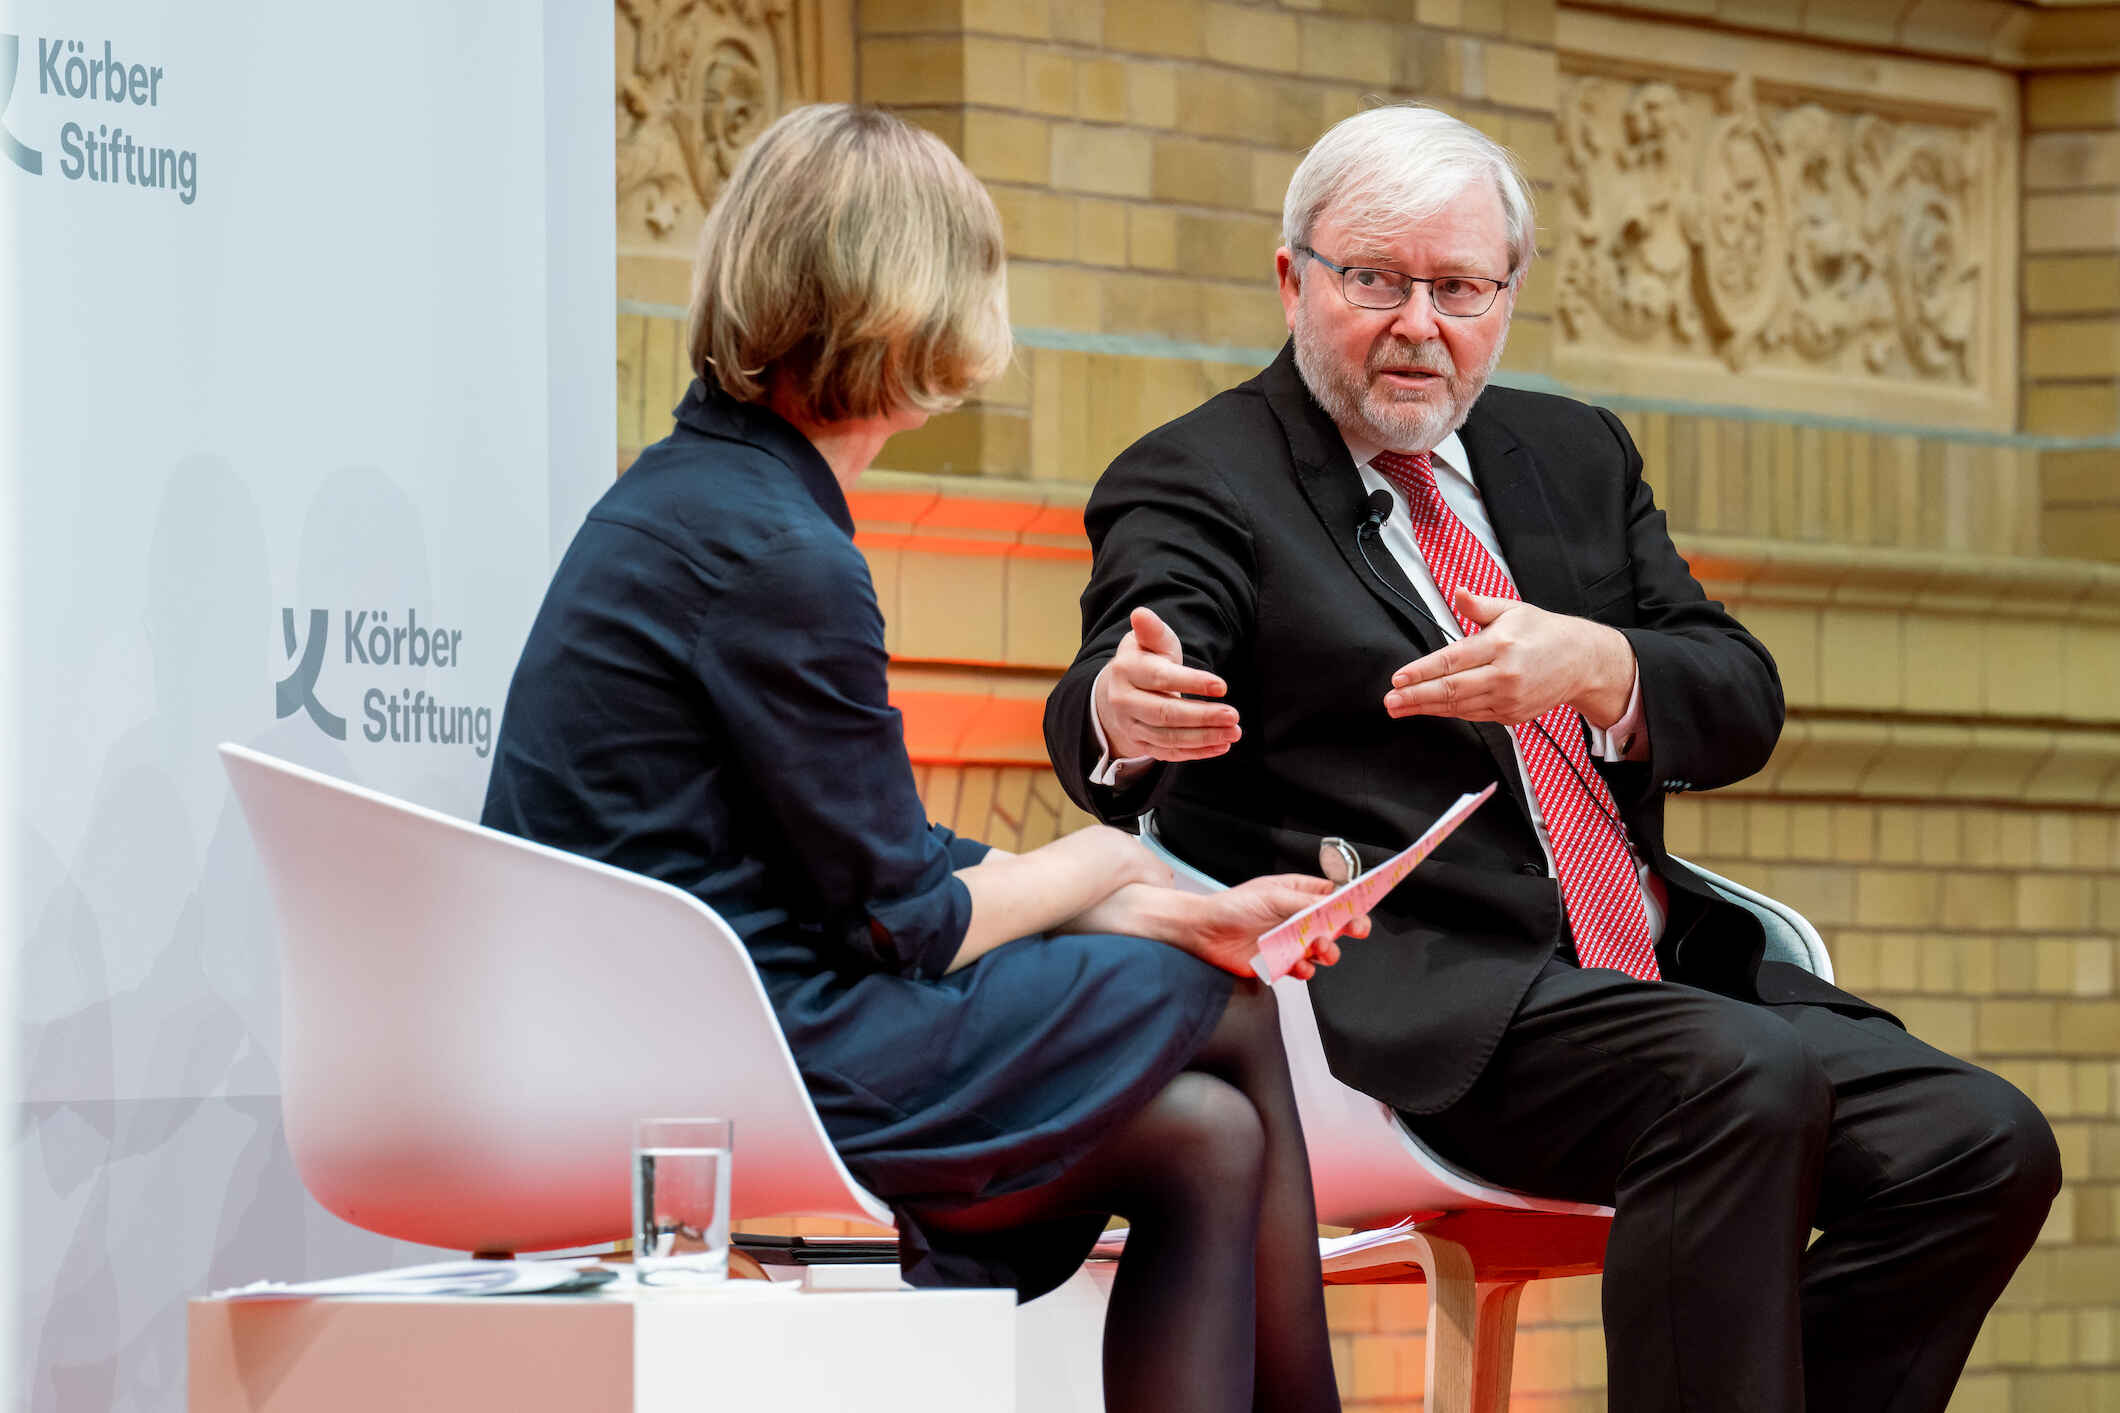 Kevin Rudd, ehemaliger Premierminister, Australien und Präsident, Vorstandsvorsitzender; Asia Society Policy Institute, New York